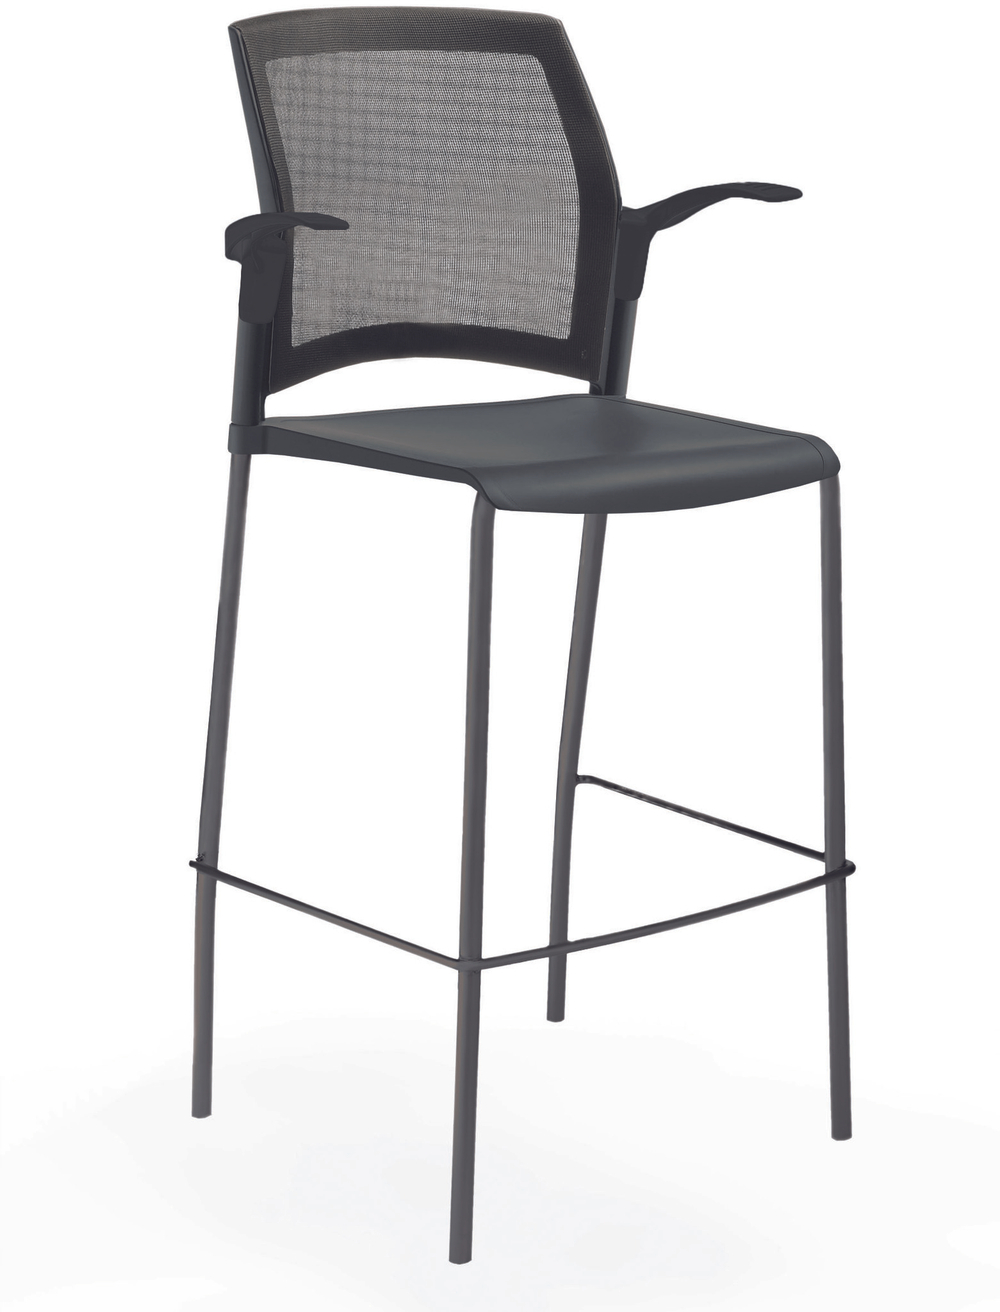 стул Rewind стул барный на 4 ногах, каркас черный, пластик черный, спинка-сетка, с открытыми подлокотниками